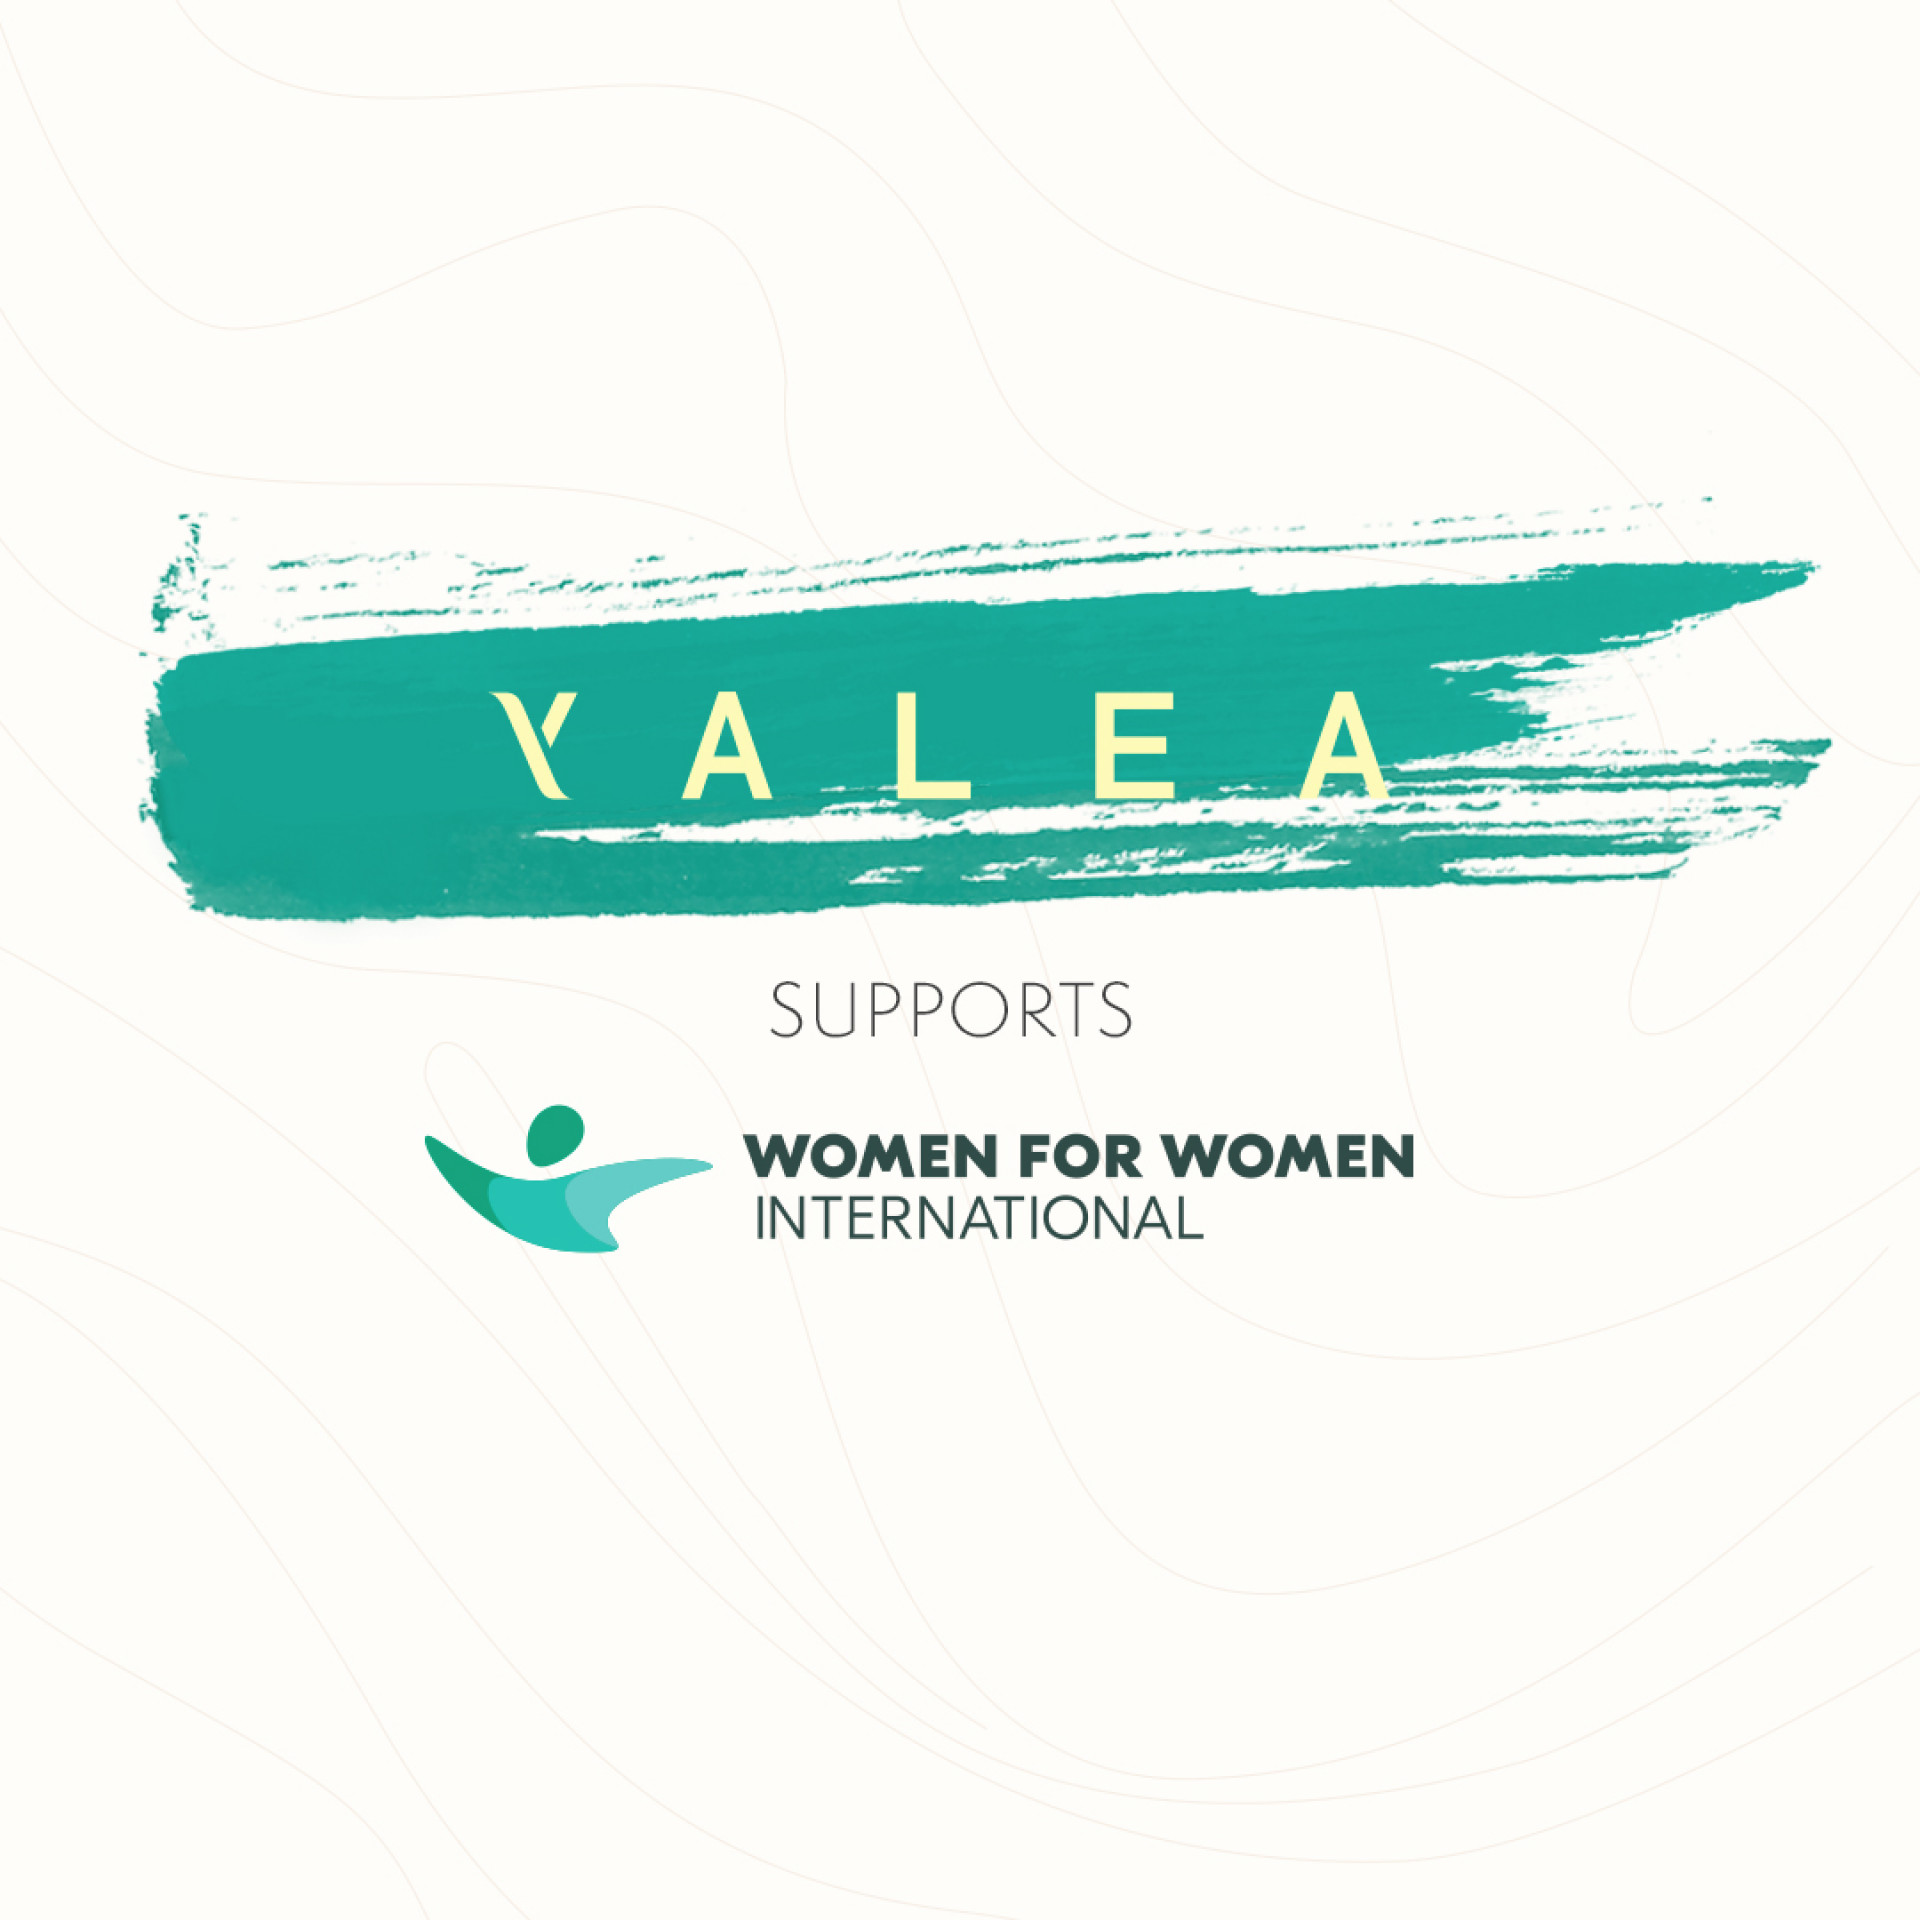 YALEA, SPOSA IL PROGRAMMA  “STRONGER WOMEN, STRONGER NATIONS” DI WOMEN FOR WOMEN INTERNATIONAL 